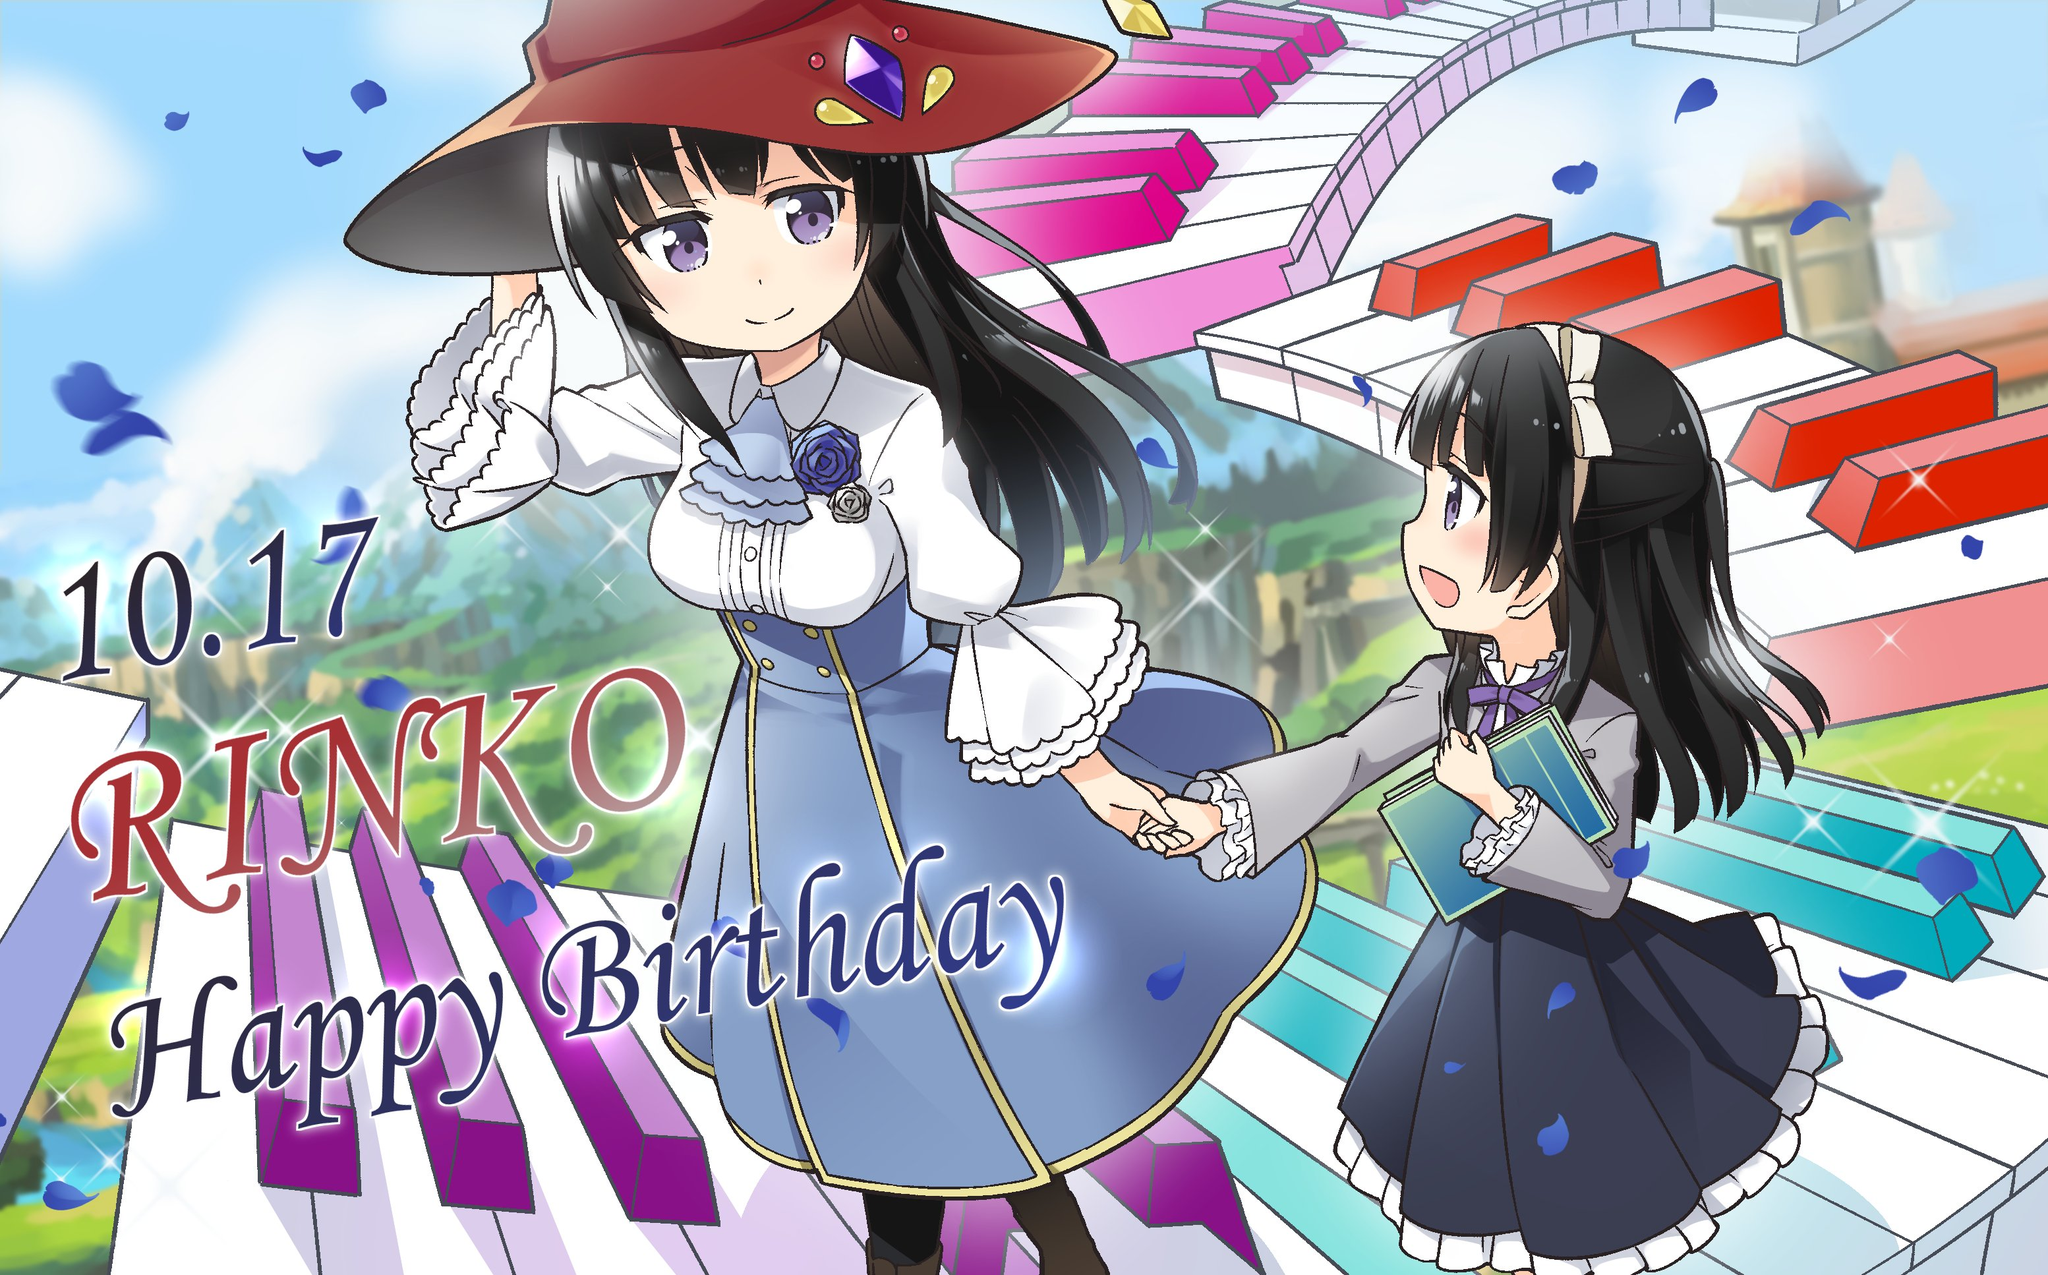 Happy Birthday 2020 - Rinko